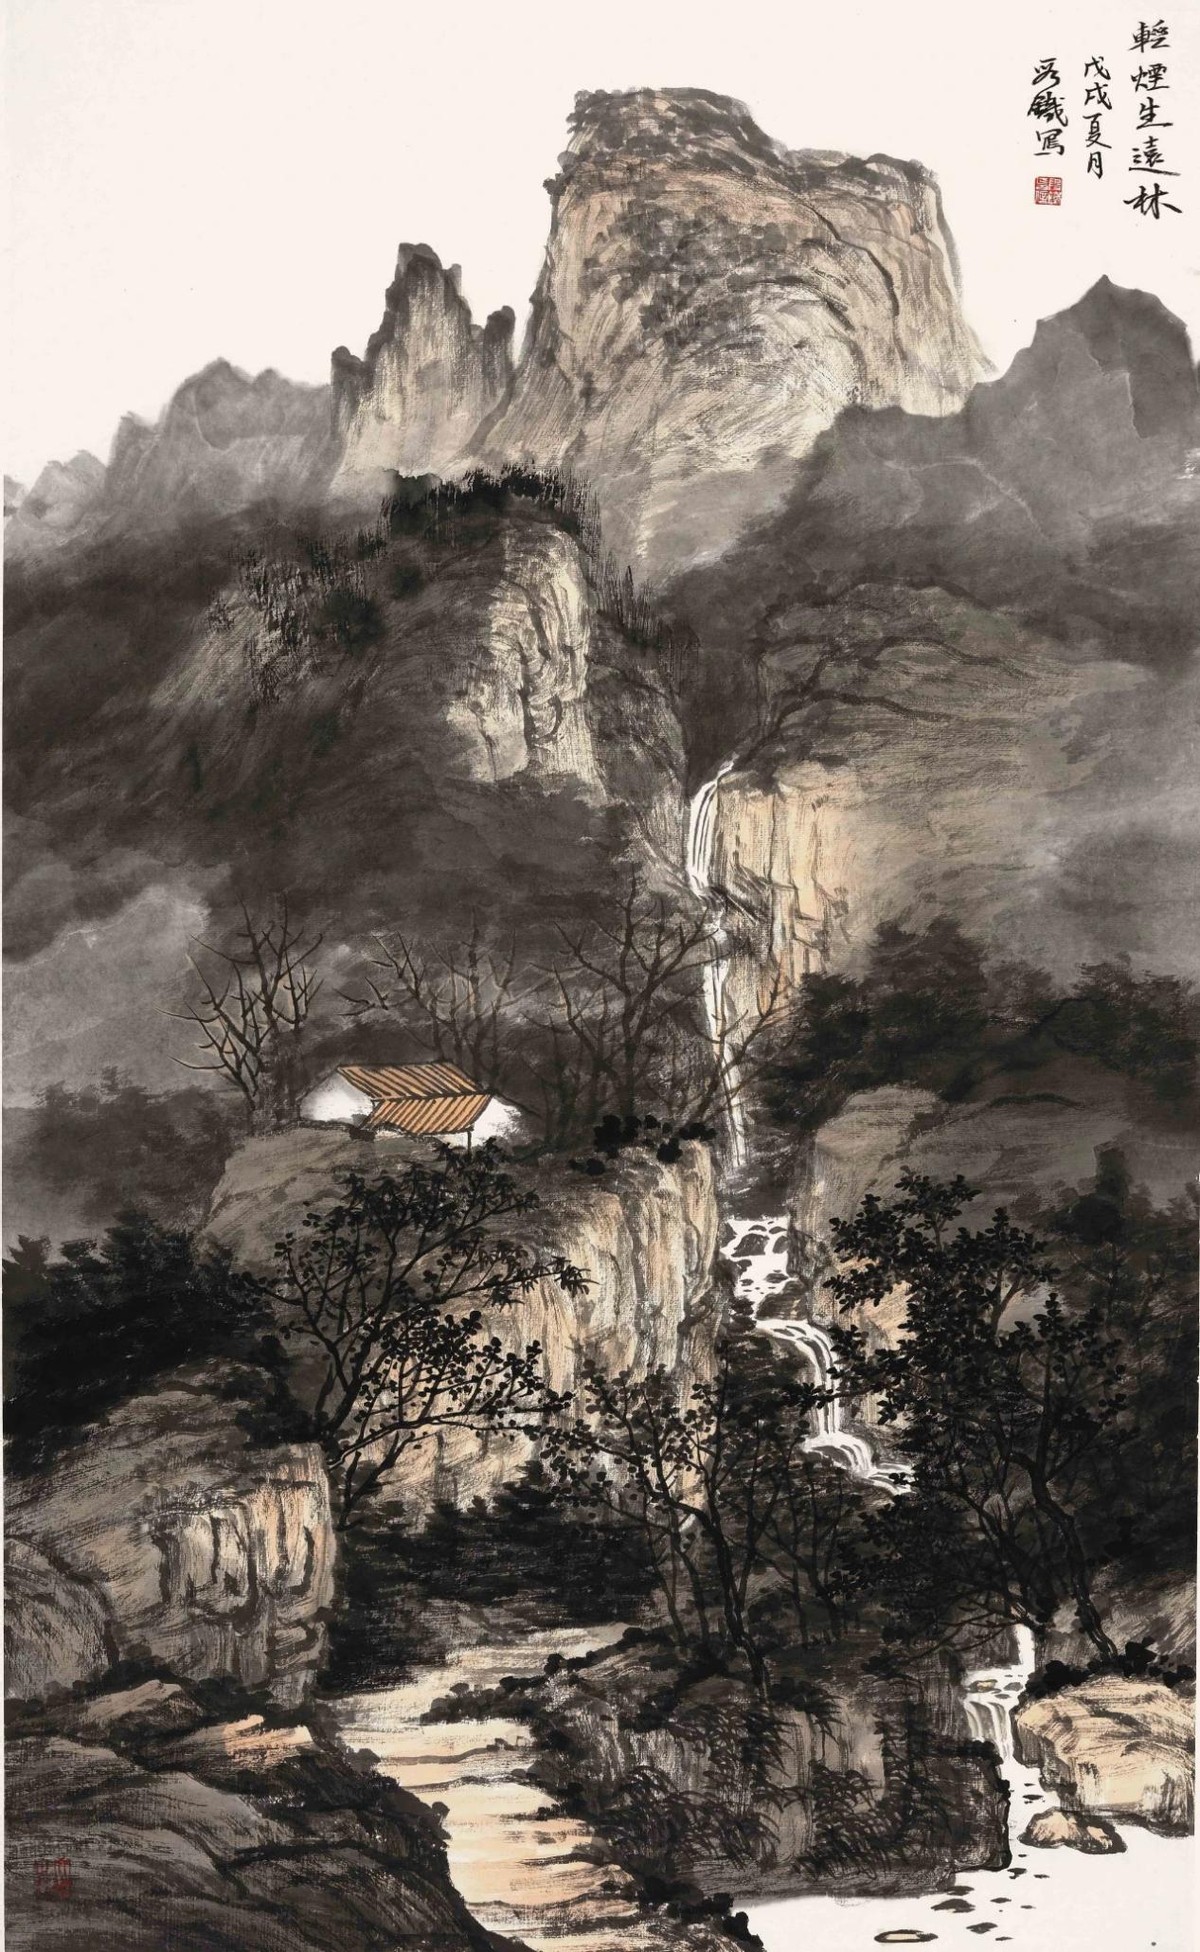 段铁:潜心钻研山水画30余年,被评选为"中国泰山第一人